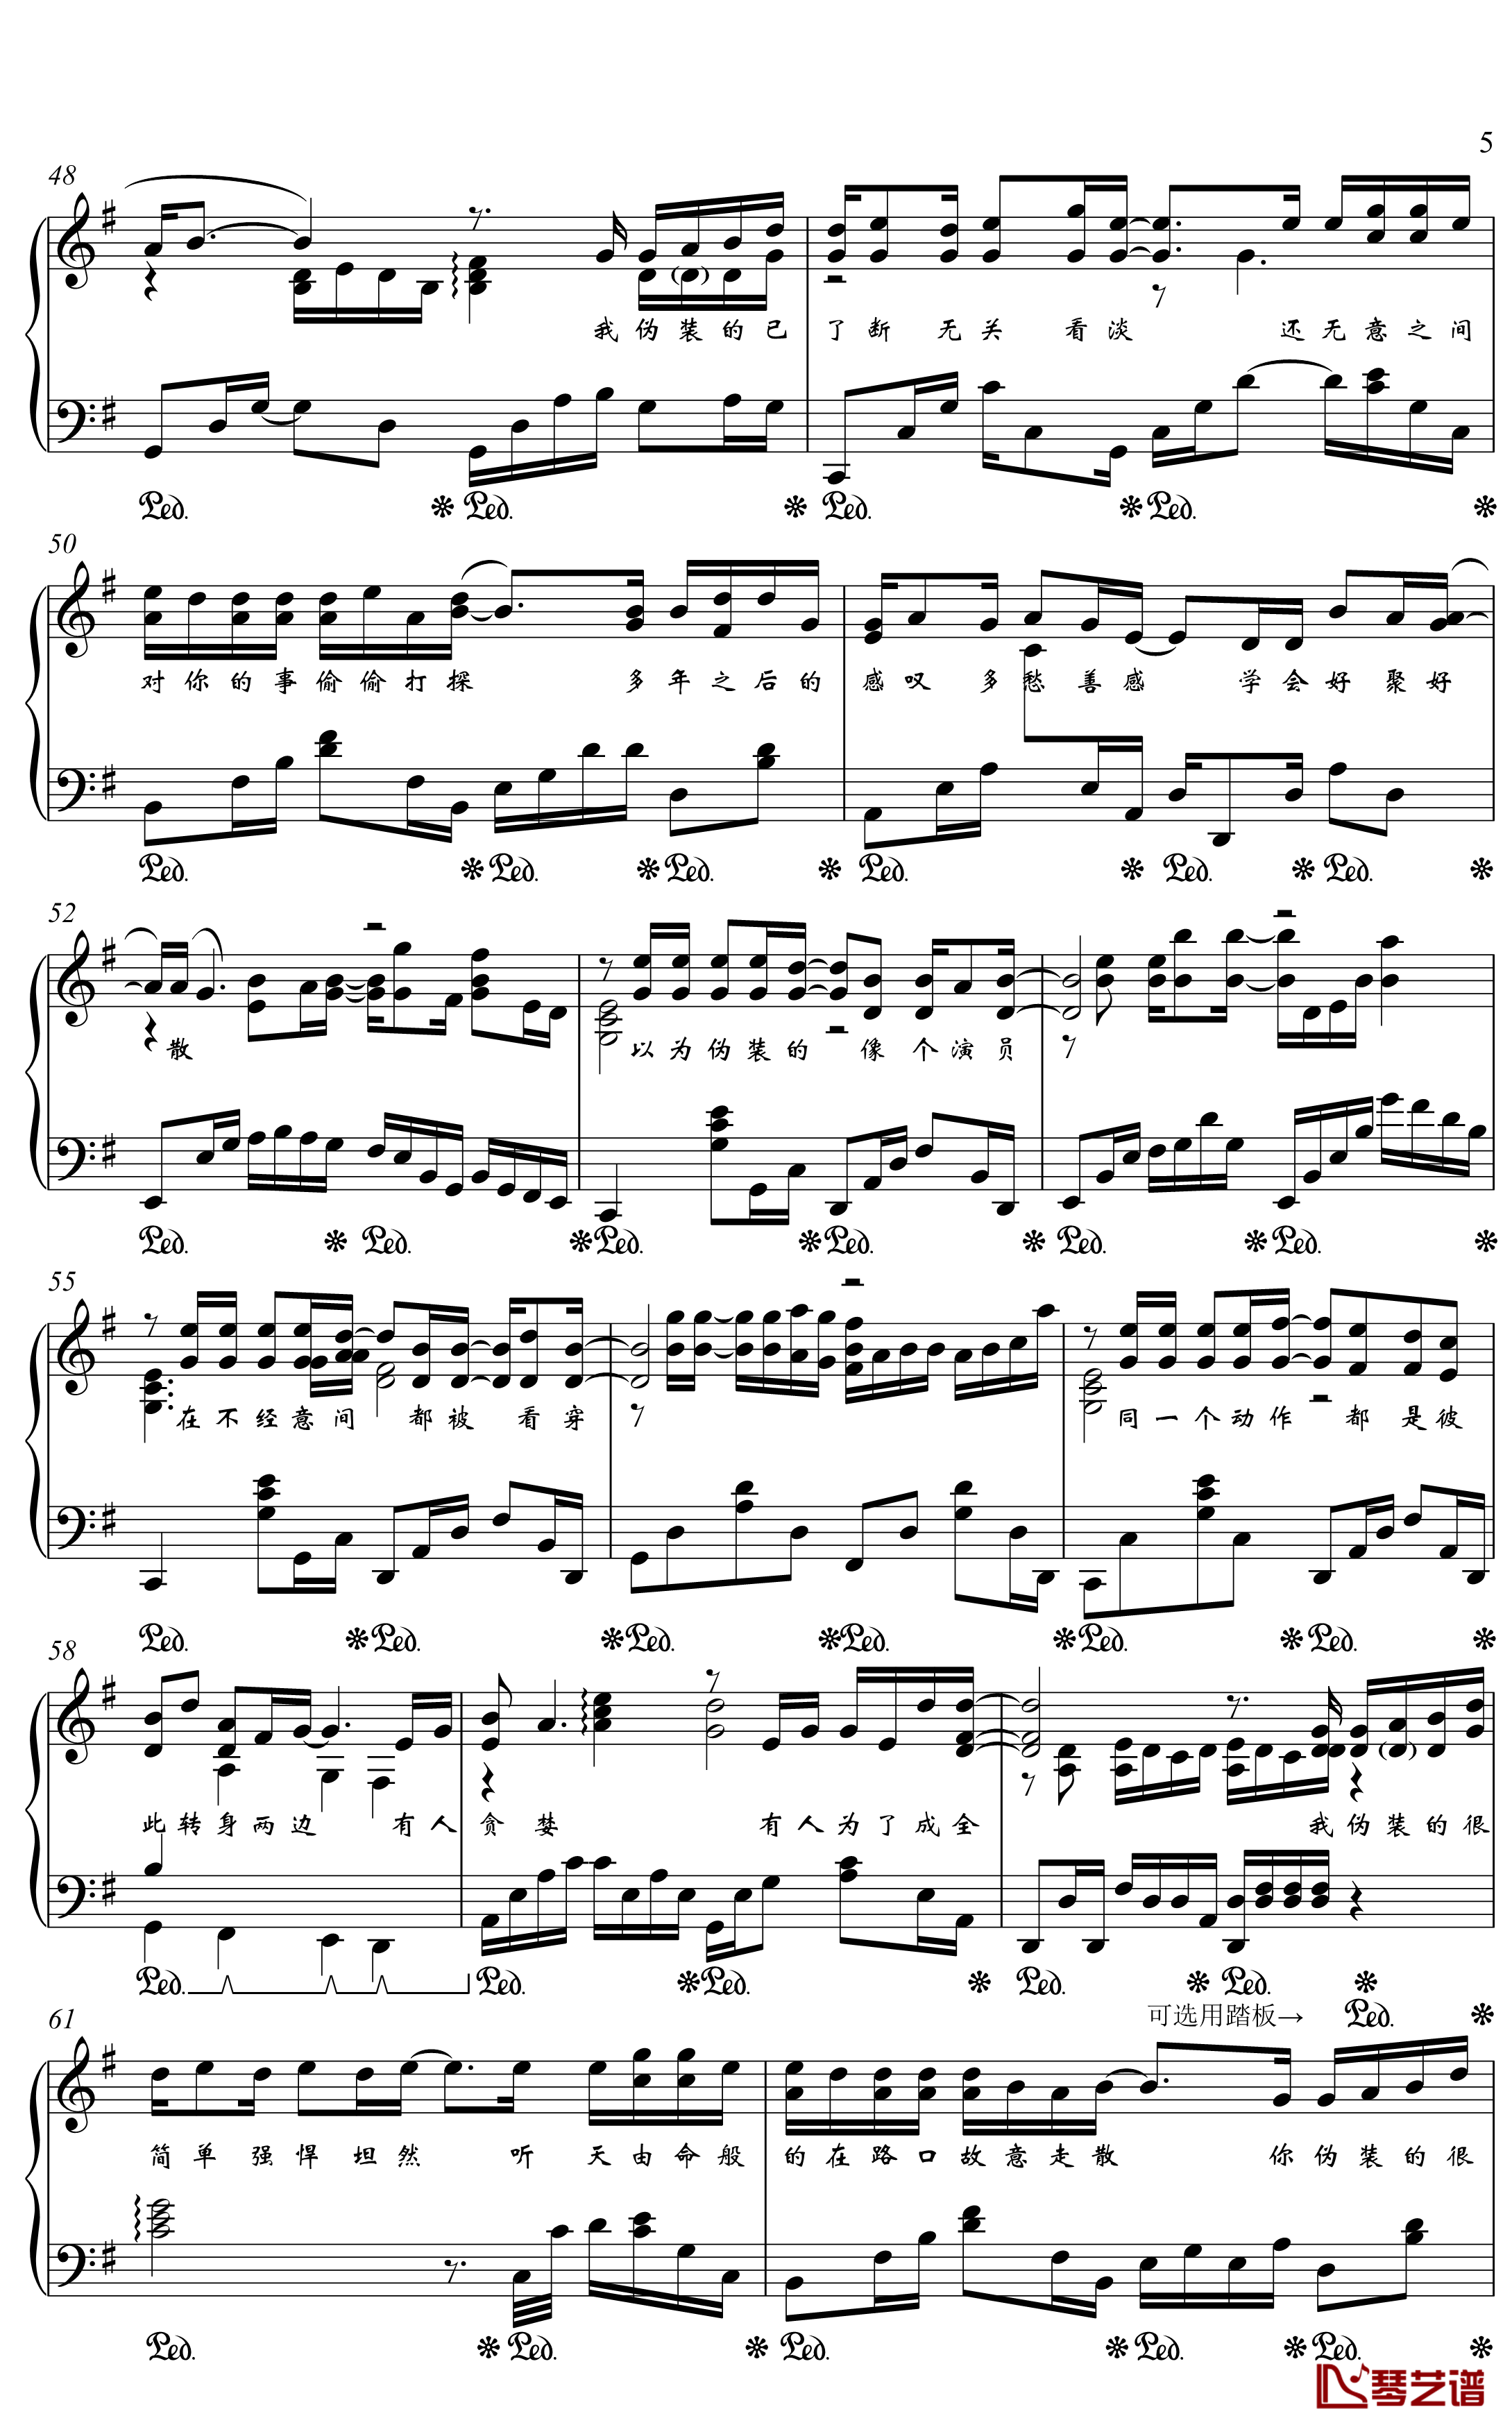 伪装钢琴谱-金老师独奏190727-大壮5